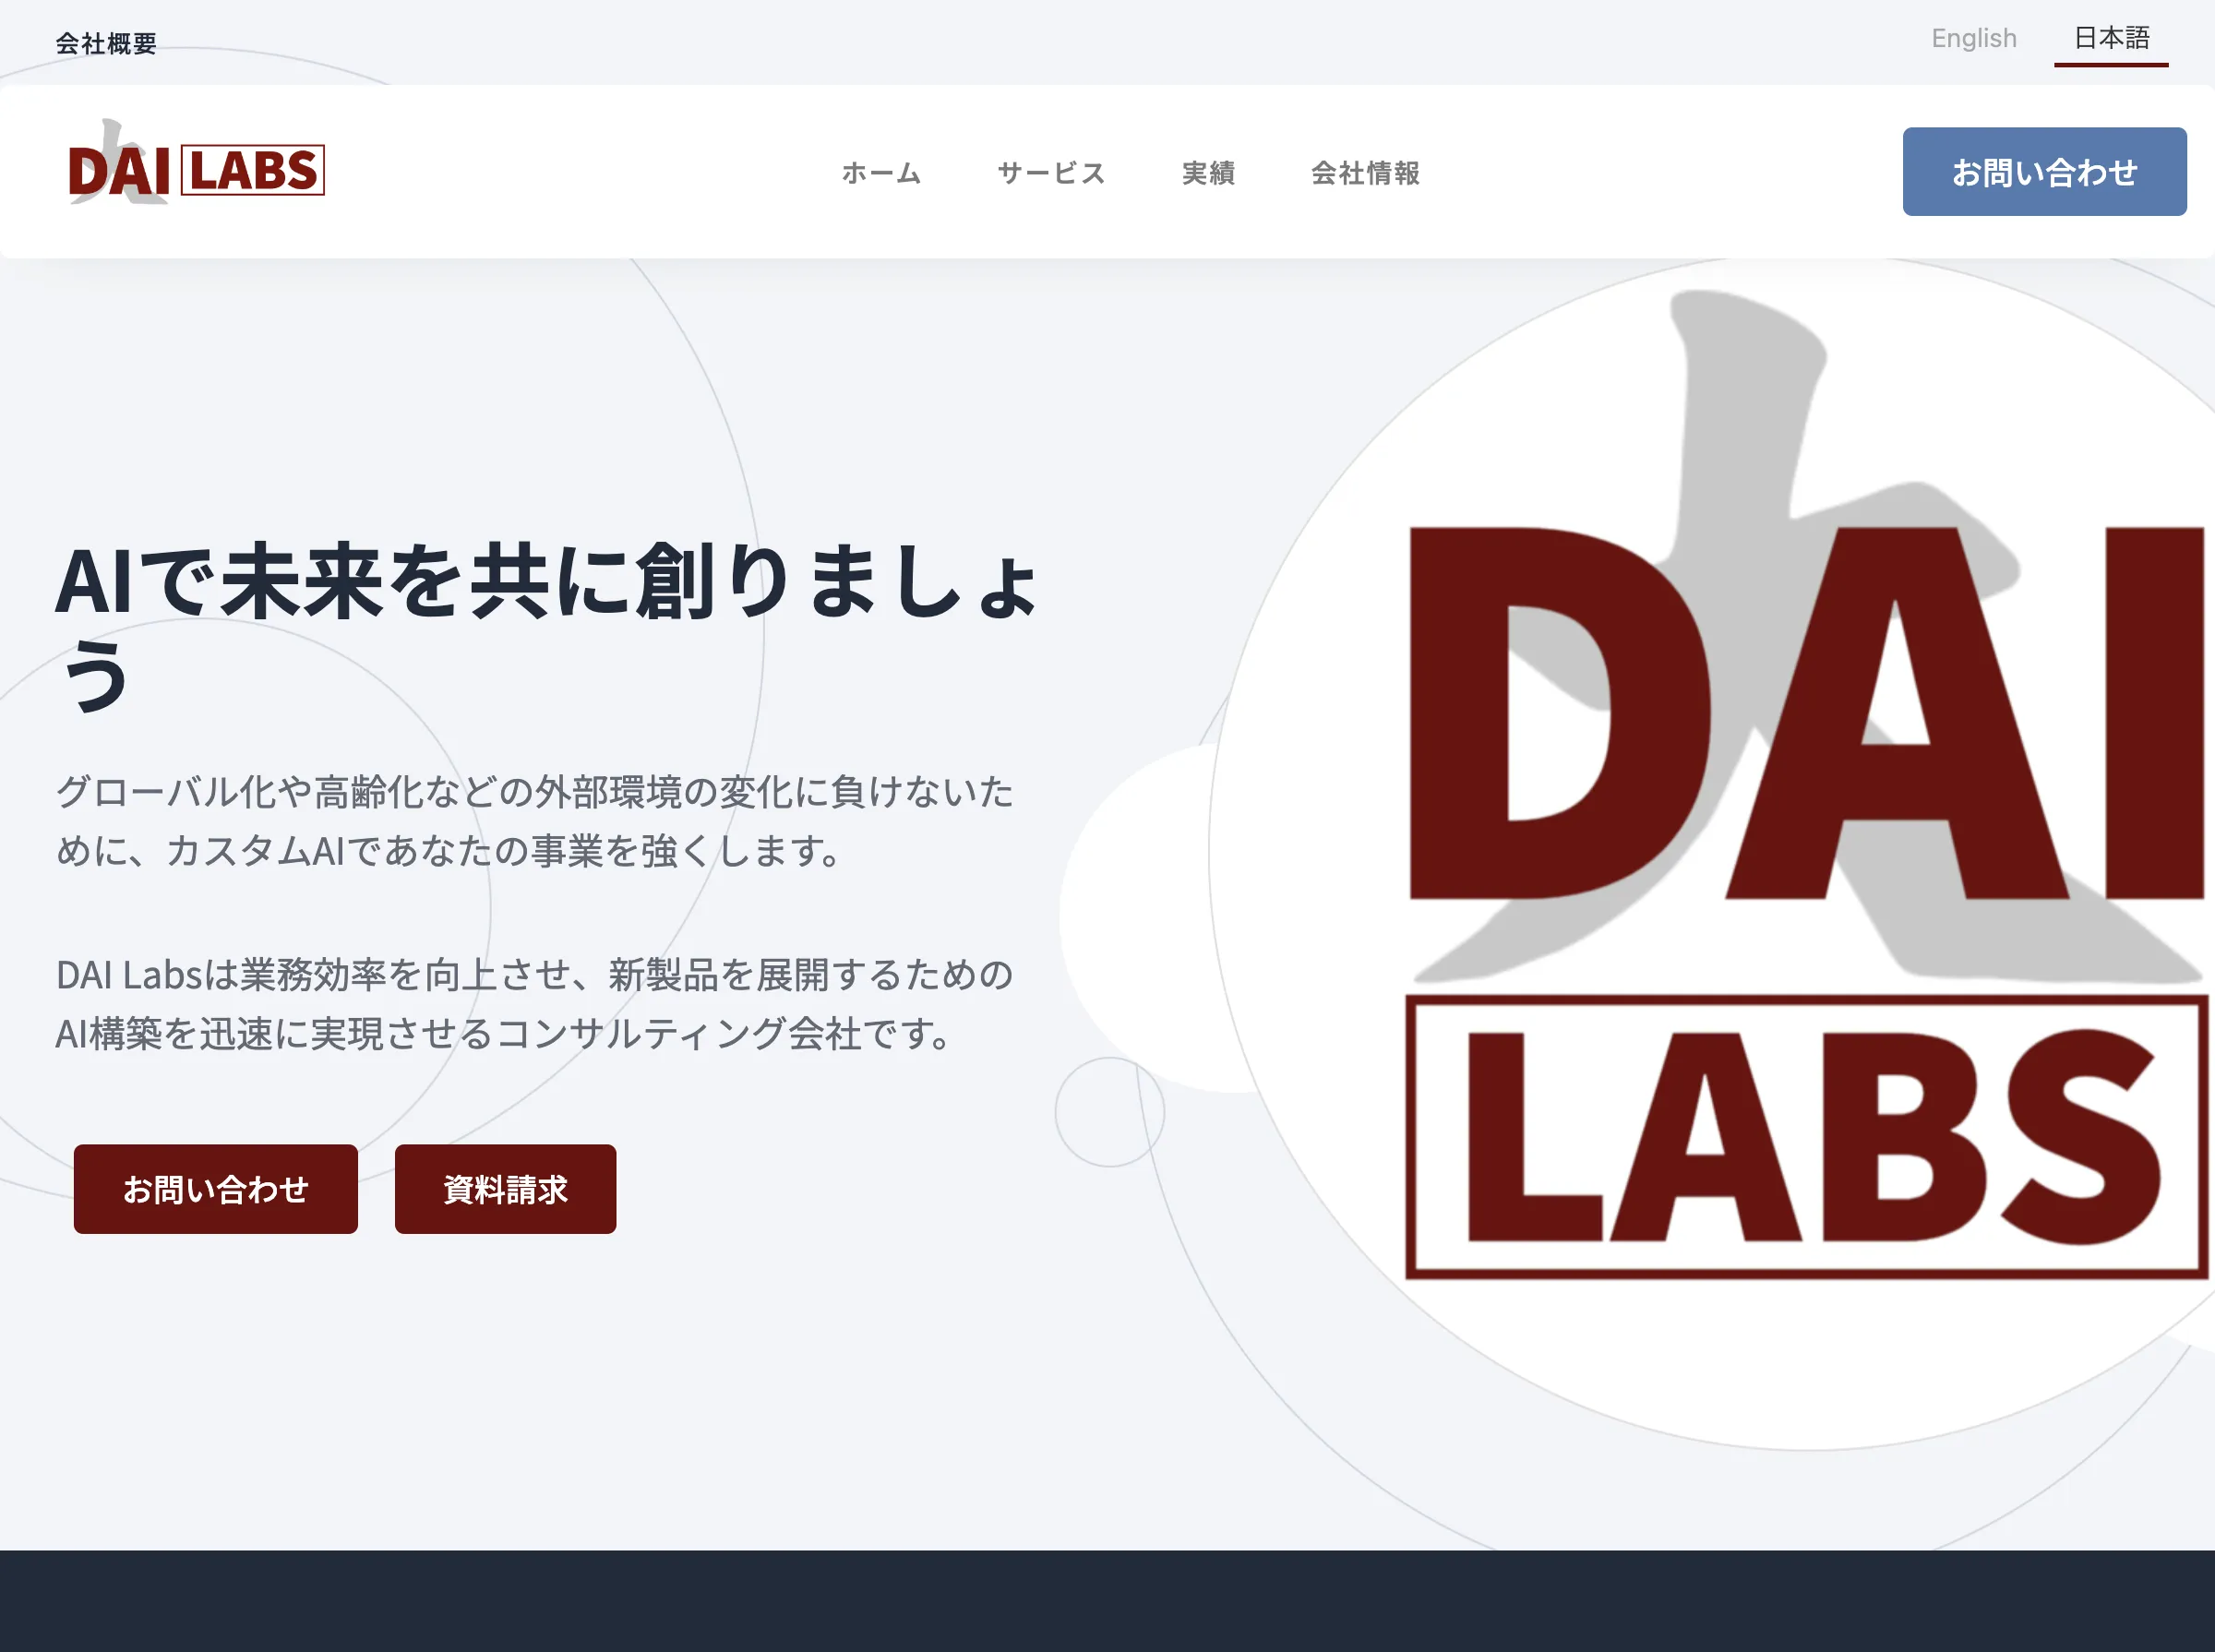 DAI Labsの研究開発サービス(DAI Labs株式会社)